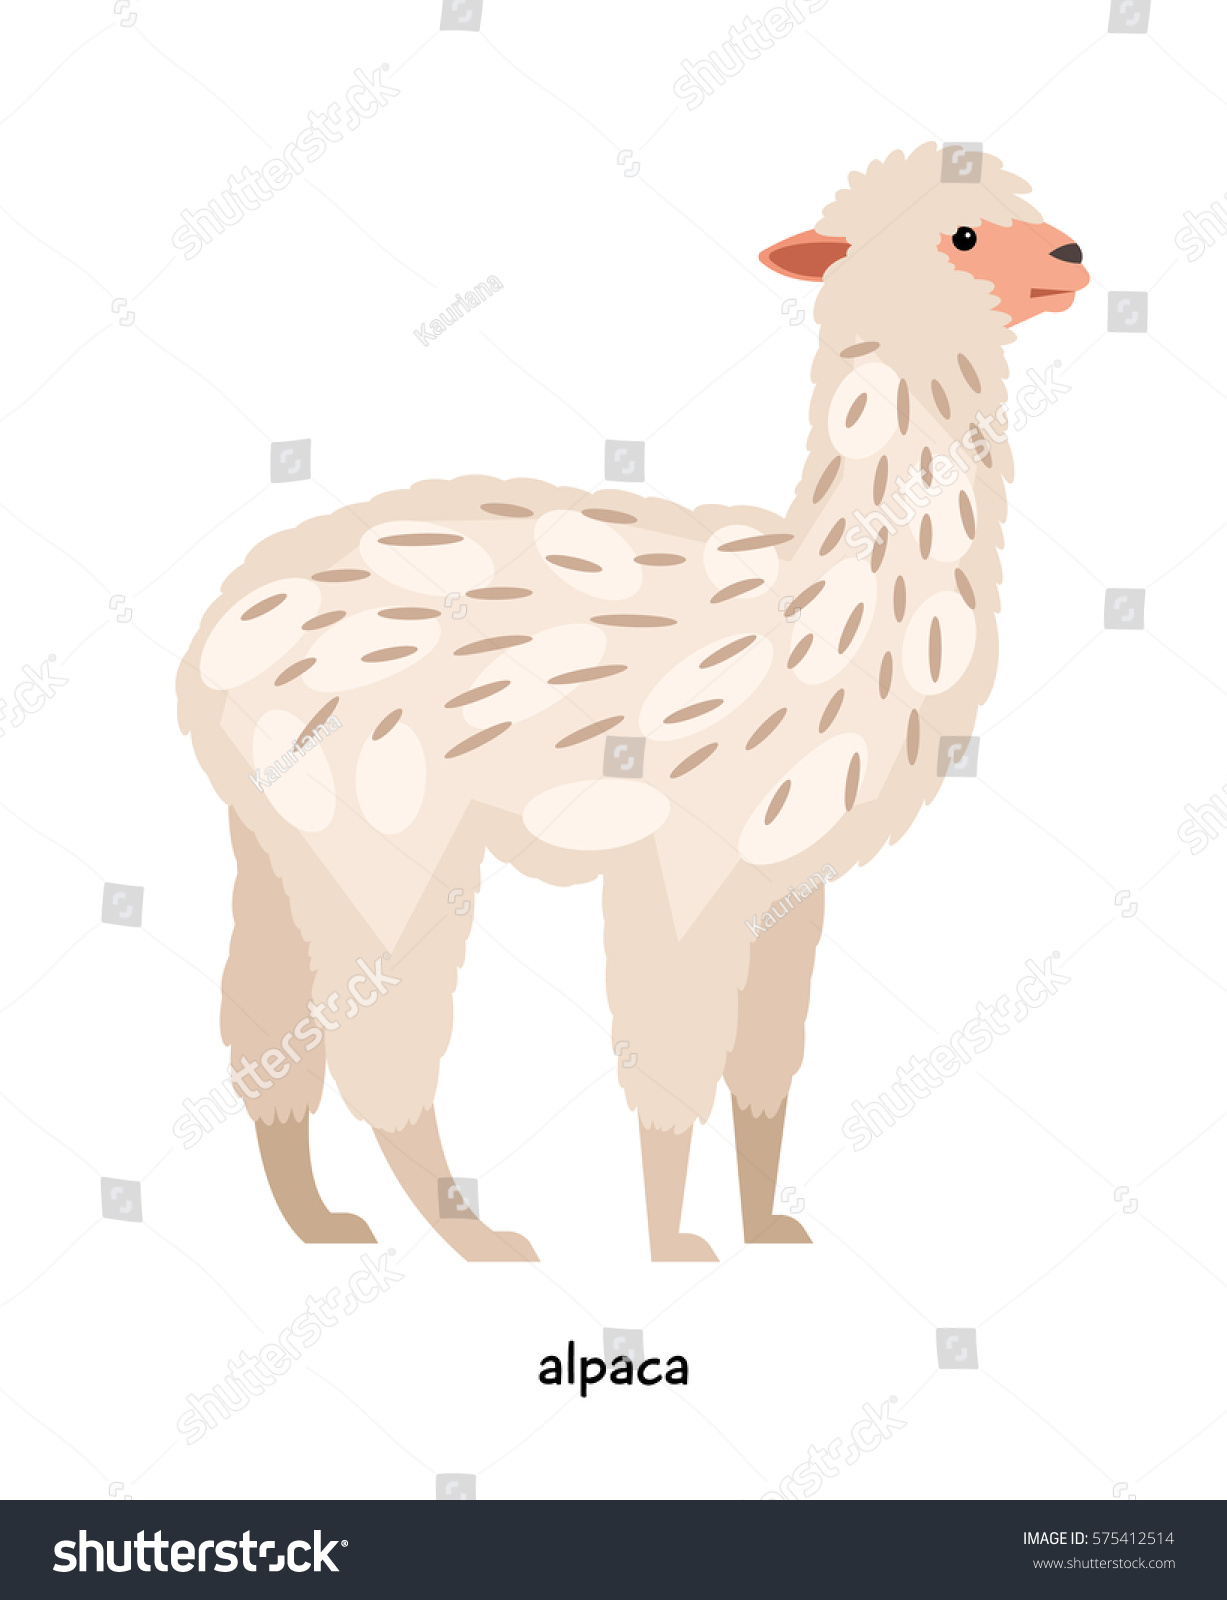 アルパカ ラクダ科の代表的な羊に似た長い首を持つ動物 のベクター画像素材 ロイヤリティフリー